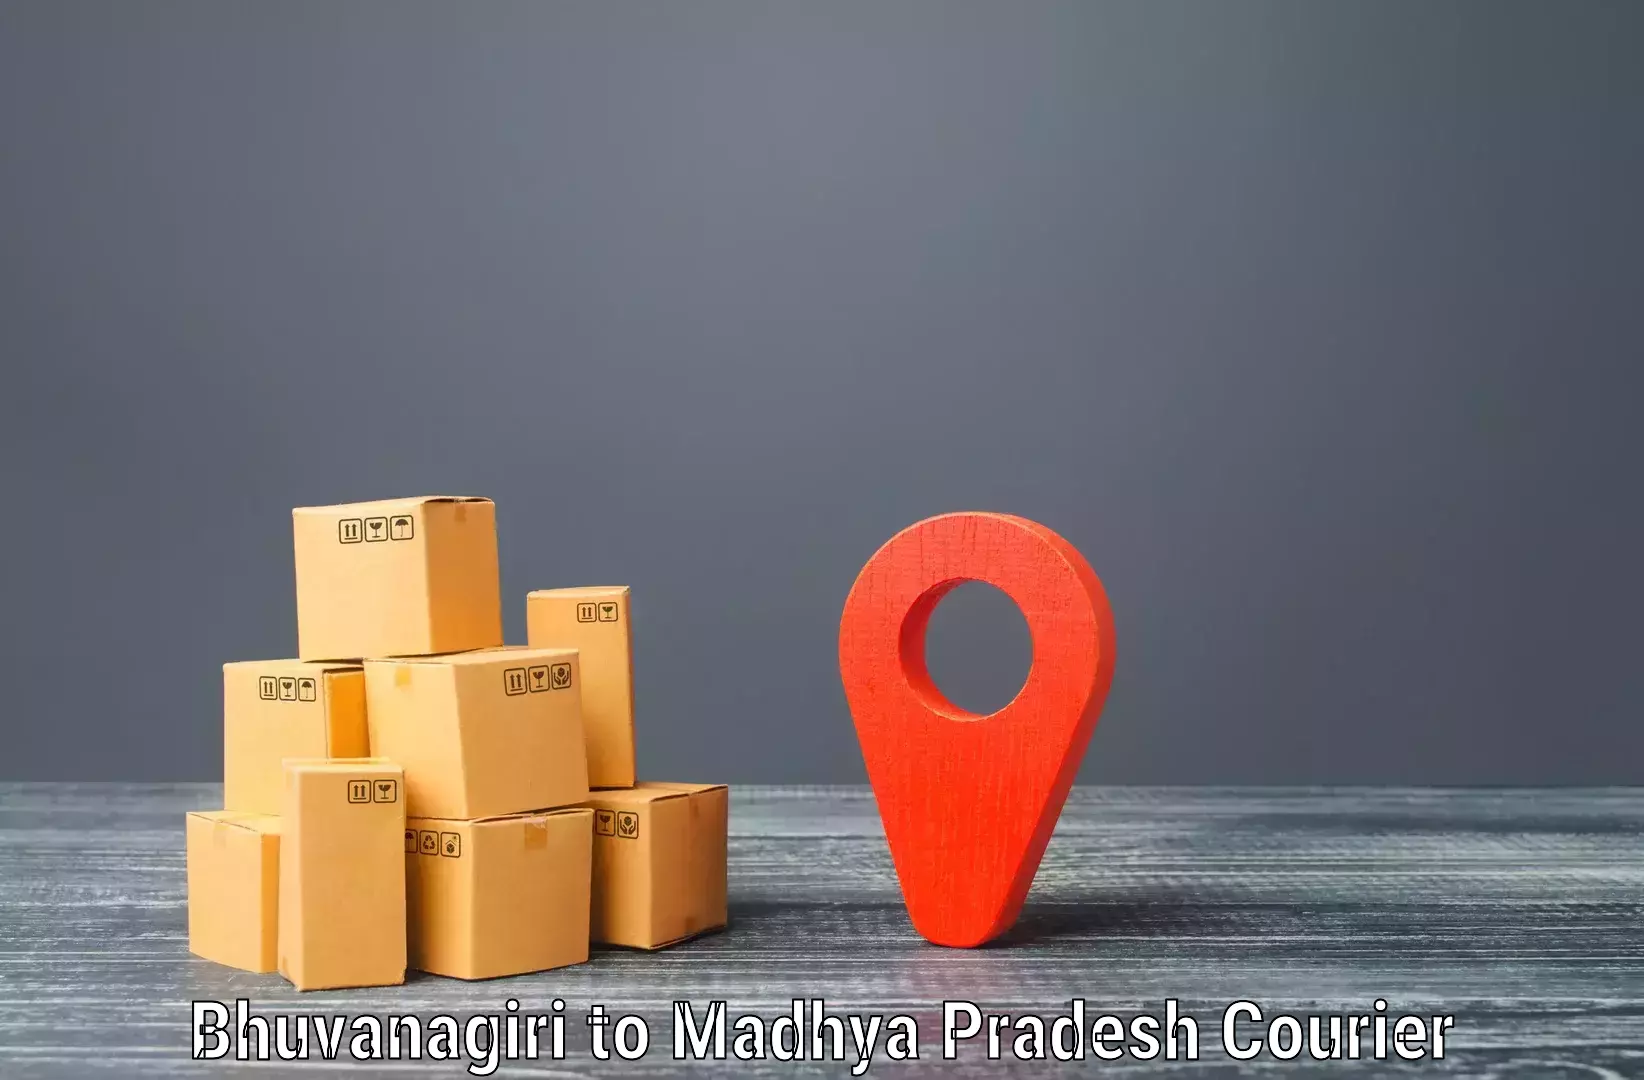 Flexible delivery schedules Bhuvanagiri to Dewas